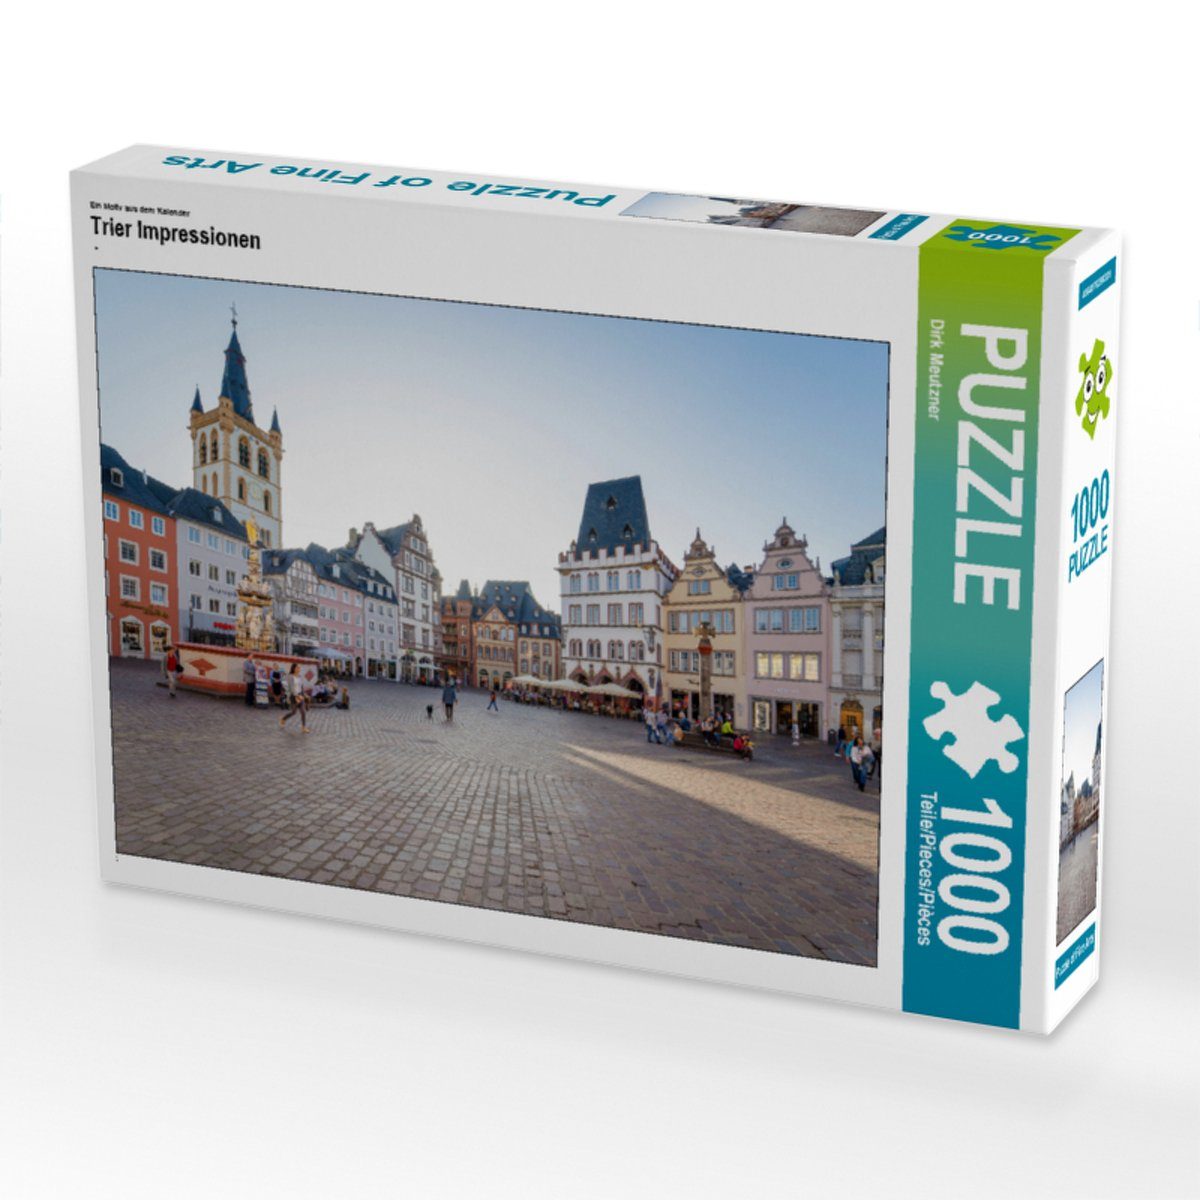 48 CALVENDO x Puzzle Teile Dirk Lege-Größe Puzzleteile Meutzner, CALVENDO Foto-Puzzle Bild Puzzle von 1000 cm 64 Impressionen Trier 1000